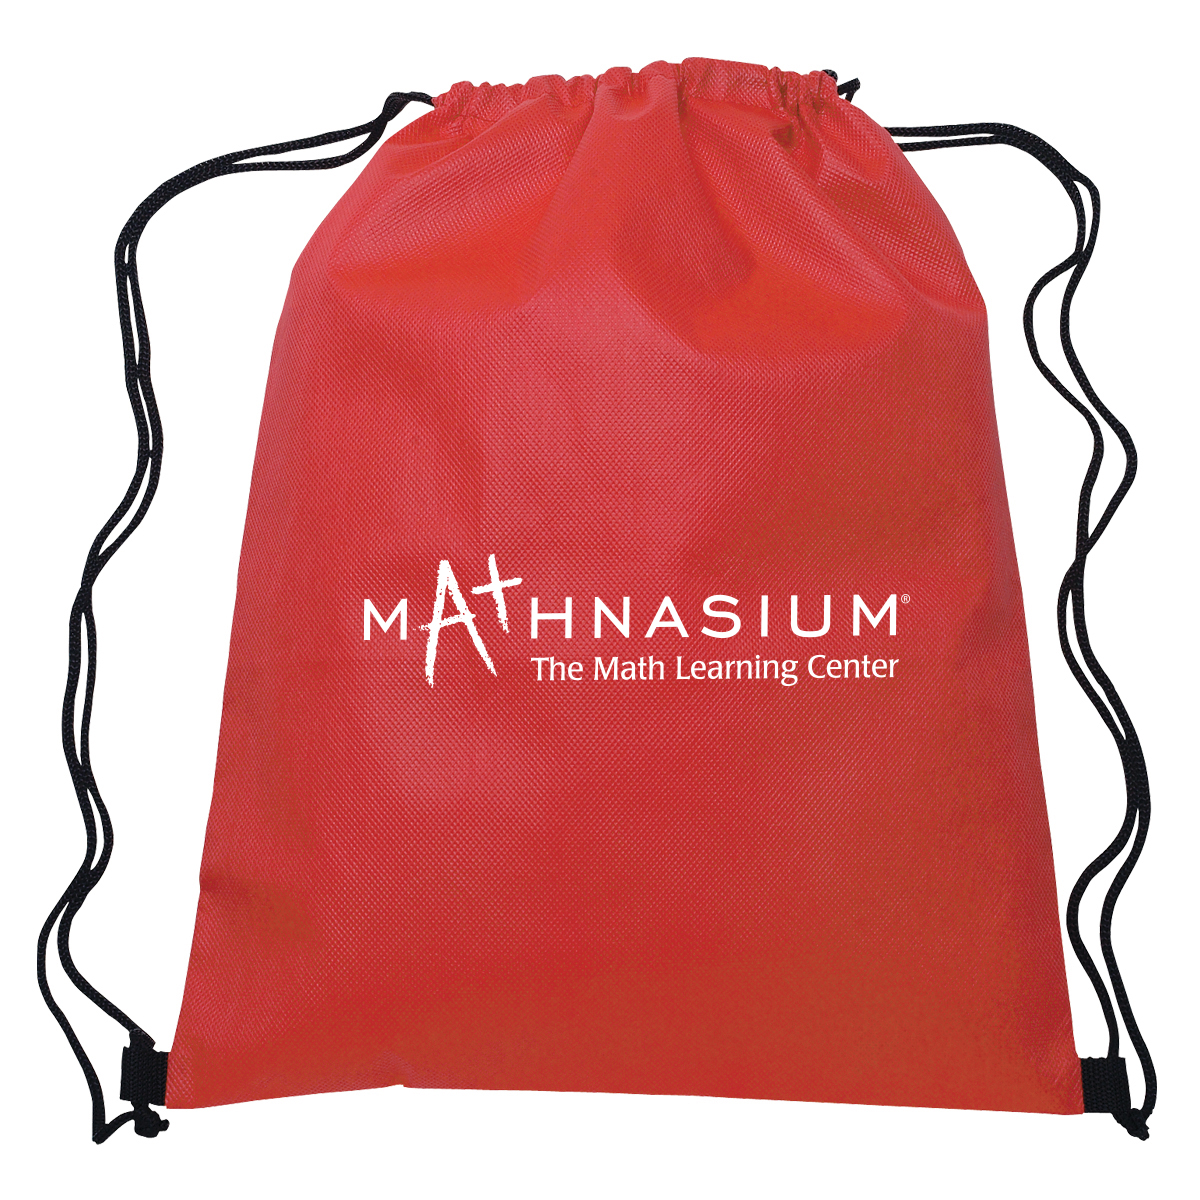 Bags: Mathnasium